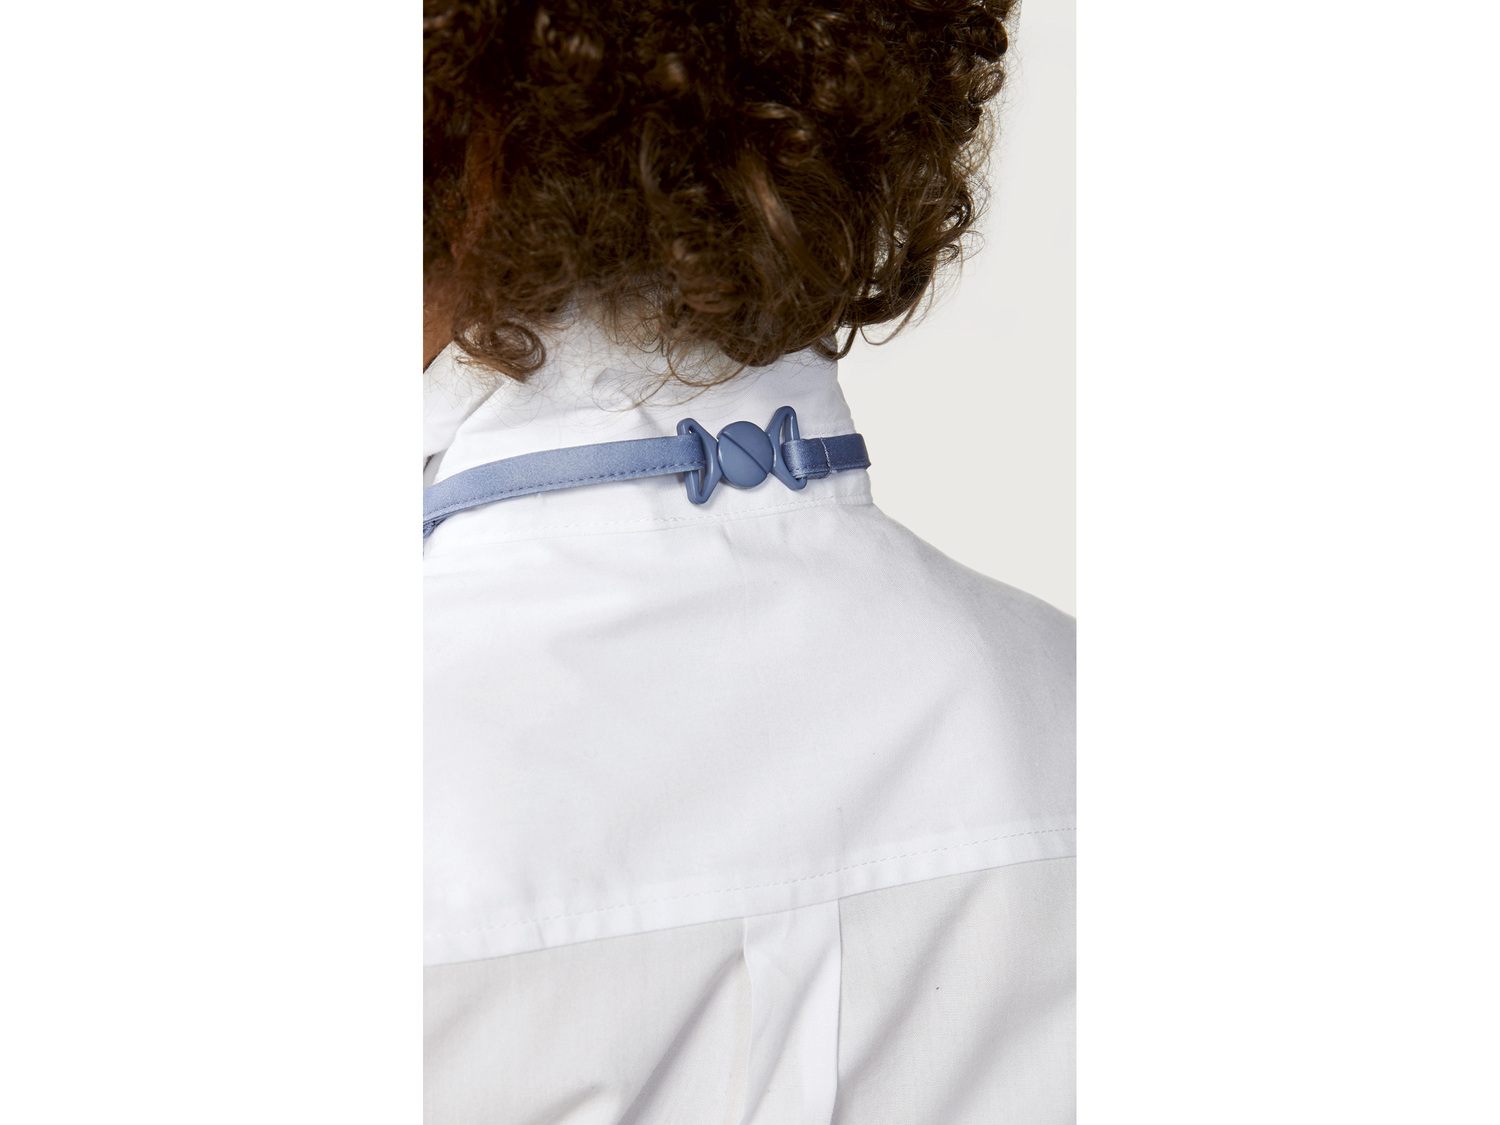 Koszula chłopięca z krawatem Lupilu, cena 24,99 PLN 
- koszula: 100% bawełny, ...